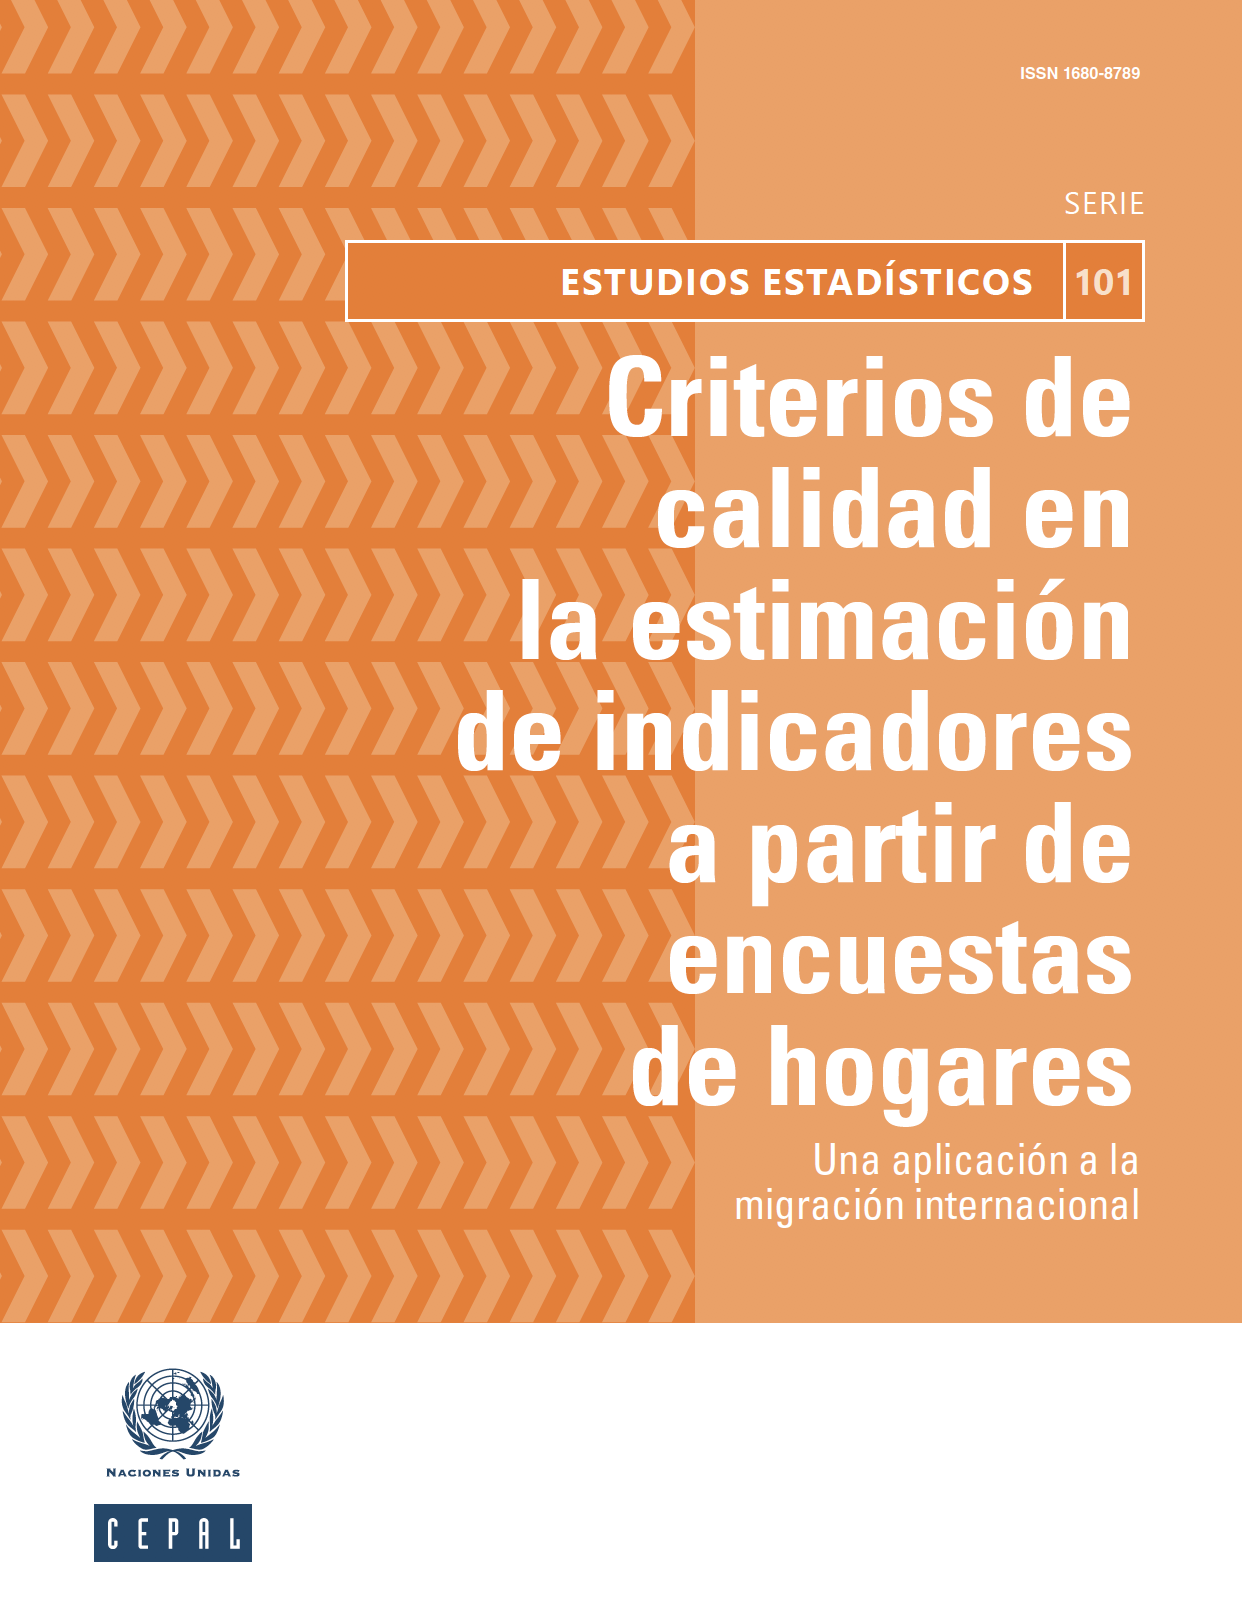 Criterios de calidad en la estimación de indicadores a partir de encuestas de hogares: una aplicación a la migración internacional